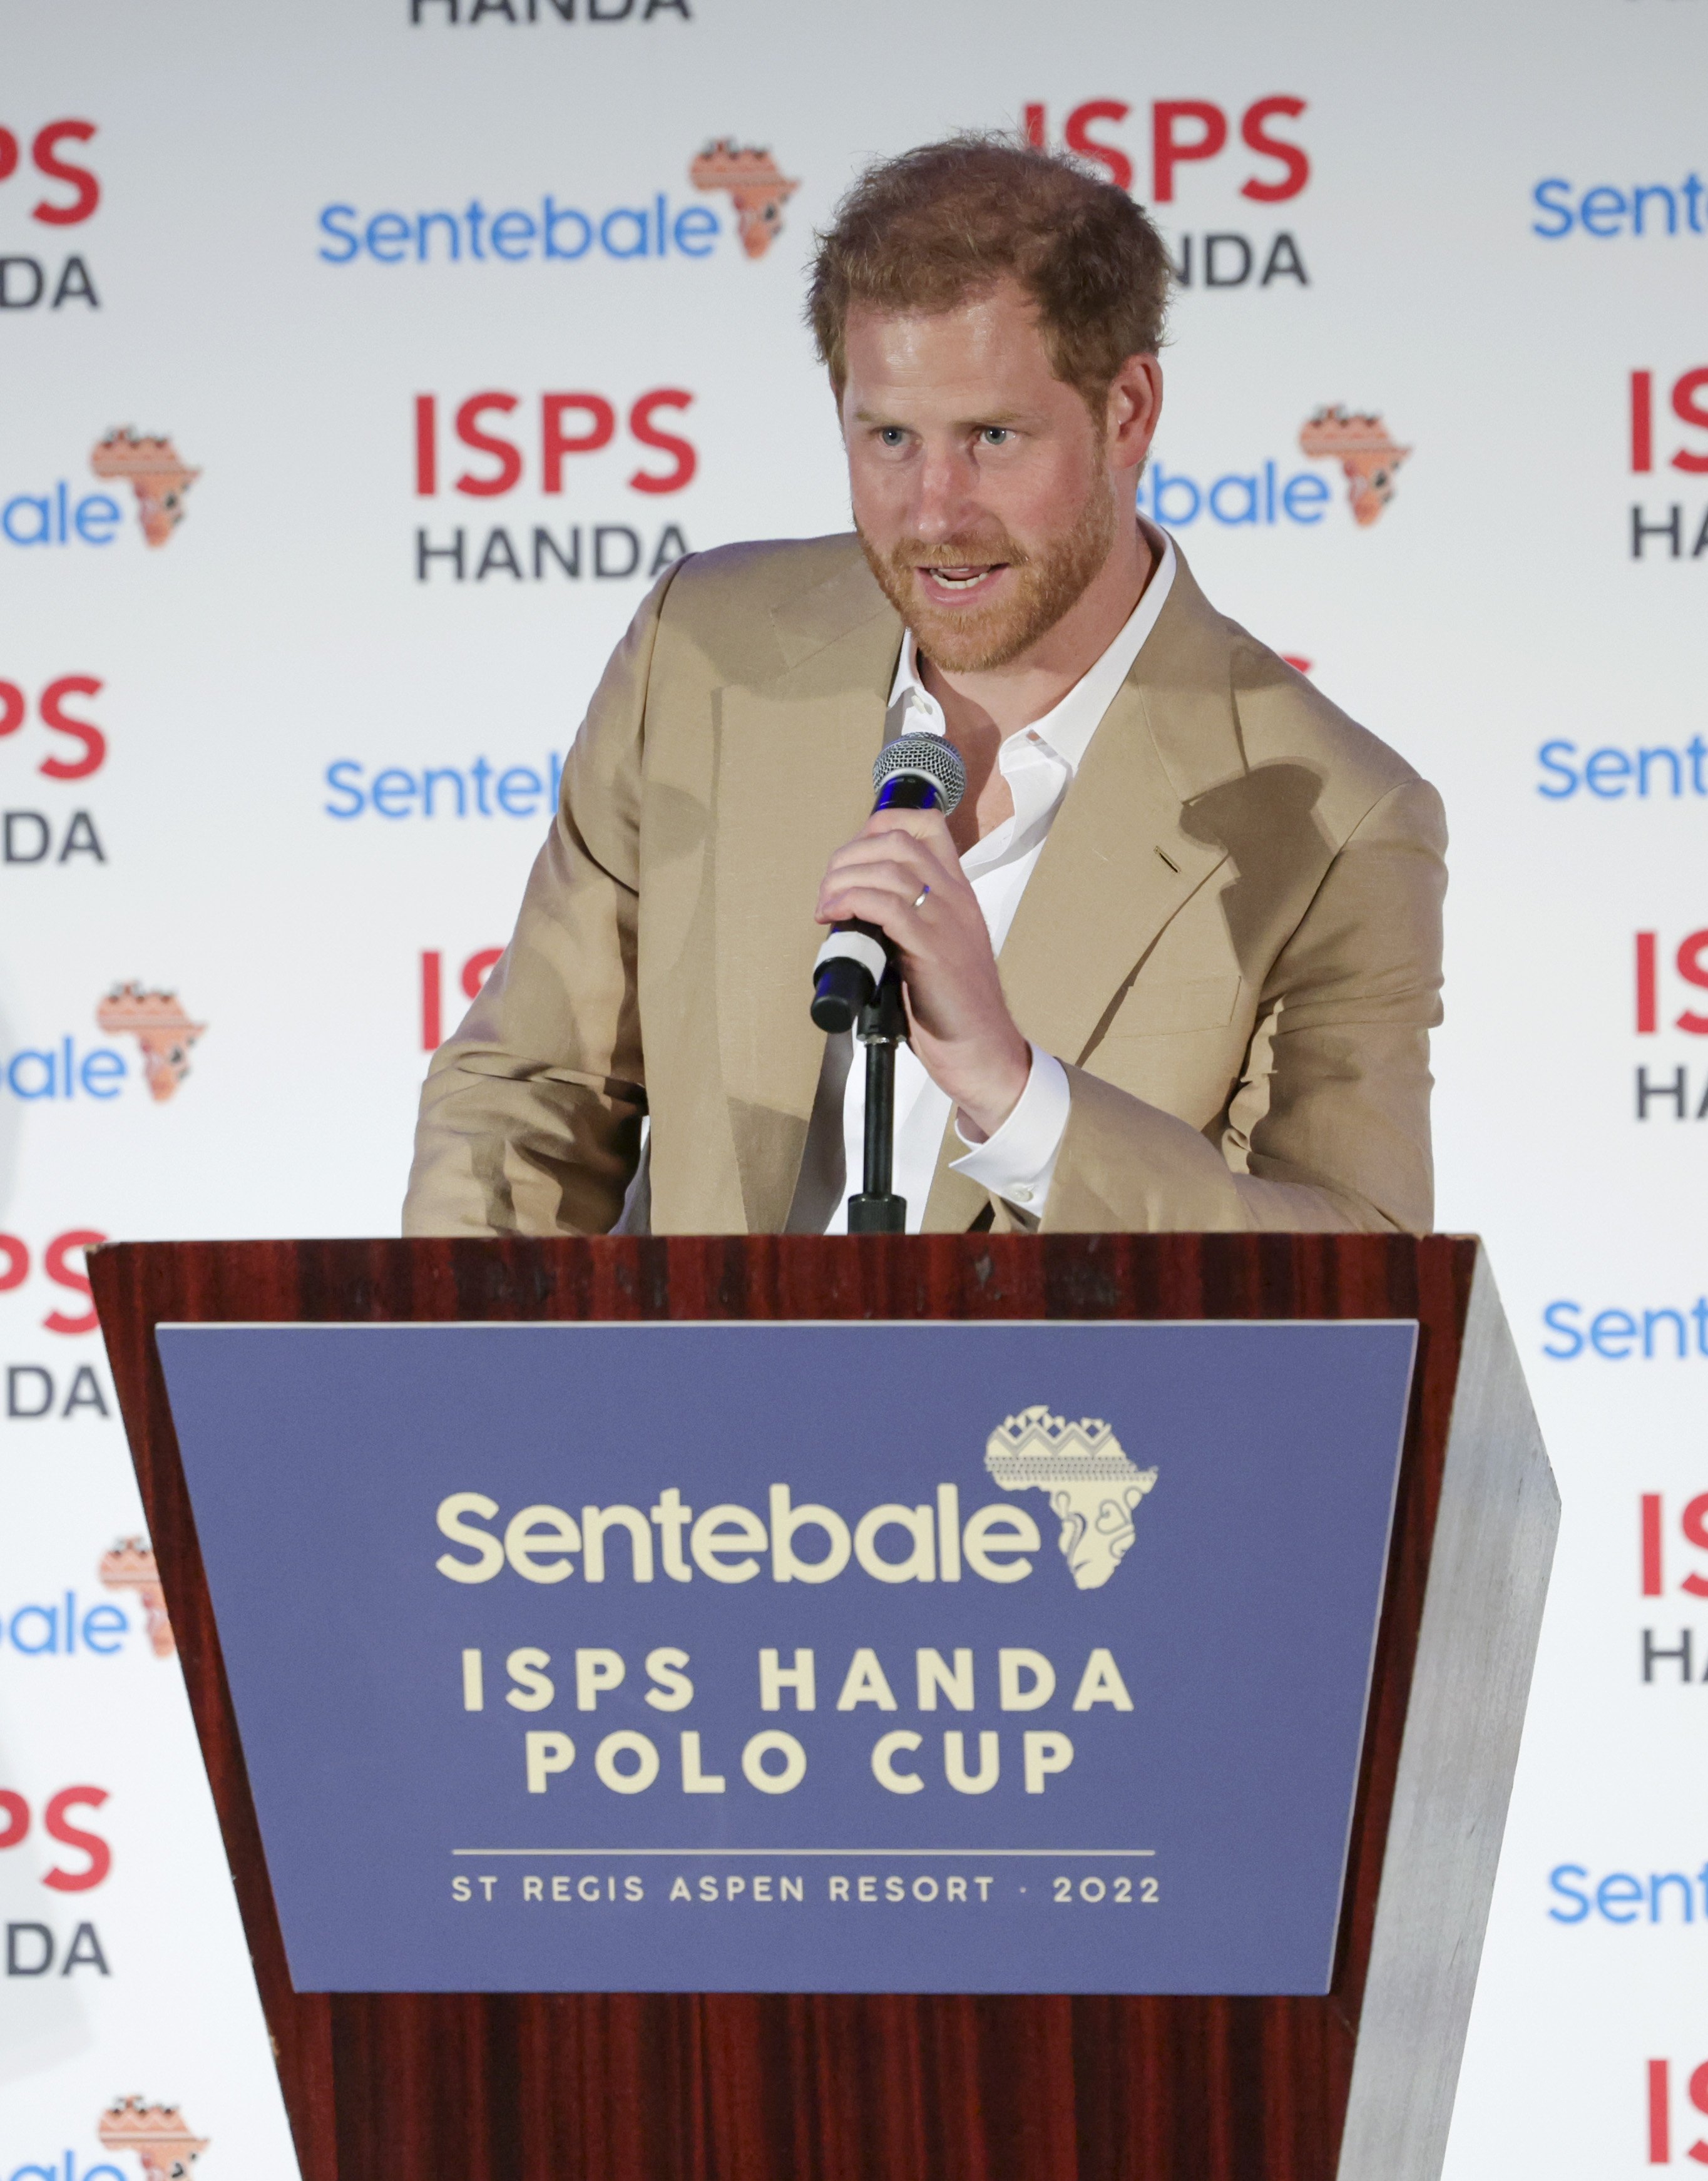 El príncipe Harry en la Sentebale ISPS Handa Polo Cup, el 25 de agosto de 2022 en Aspen, Colorado. | Foto: Getty Images